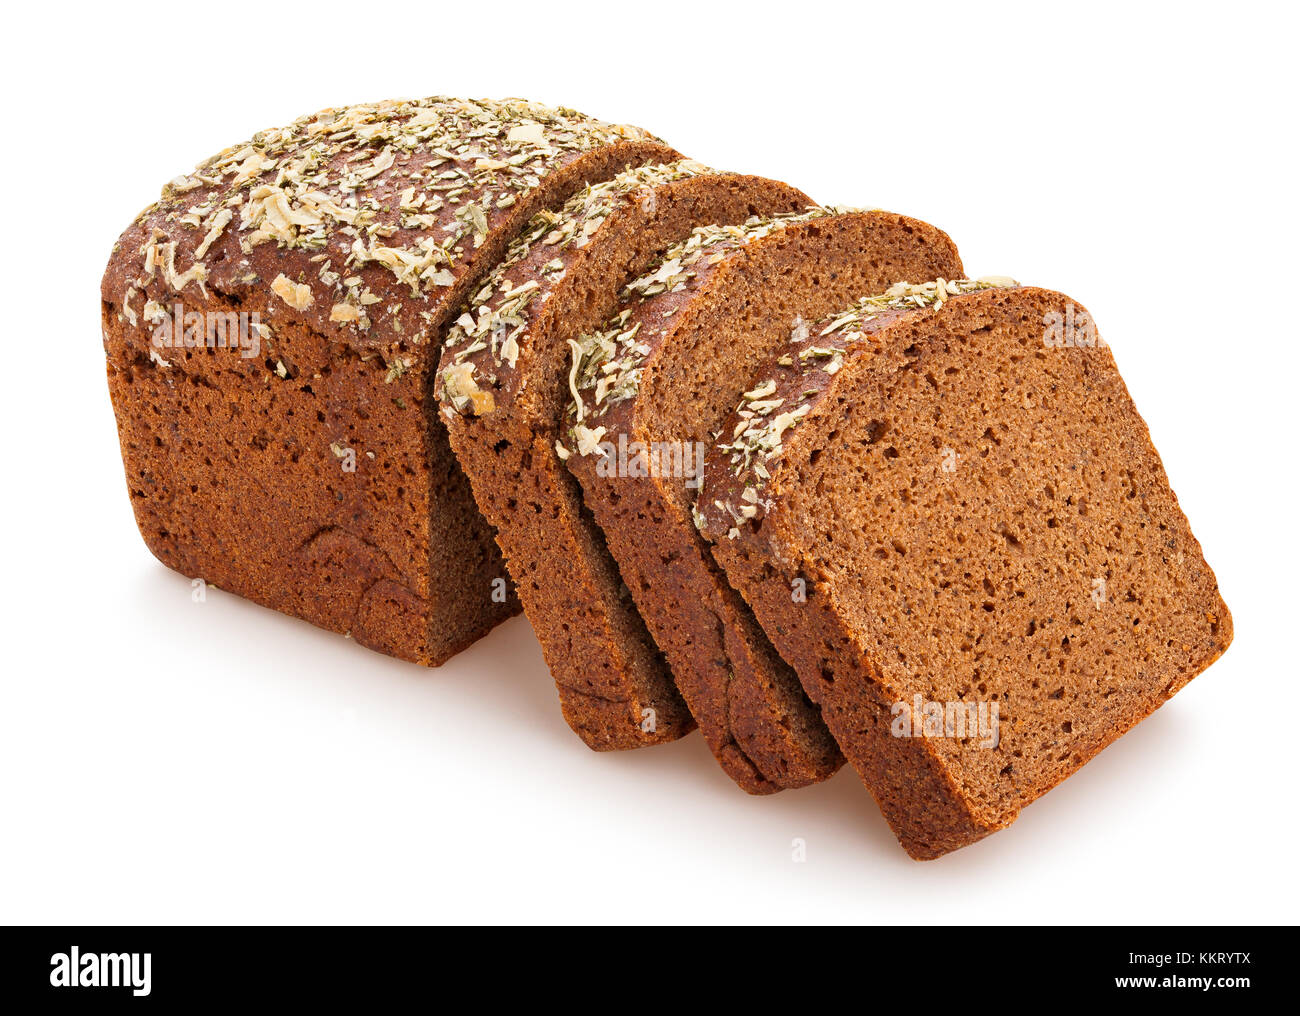 Origano a fette di pane integrale percorso isolato Foto Stock